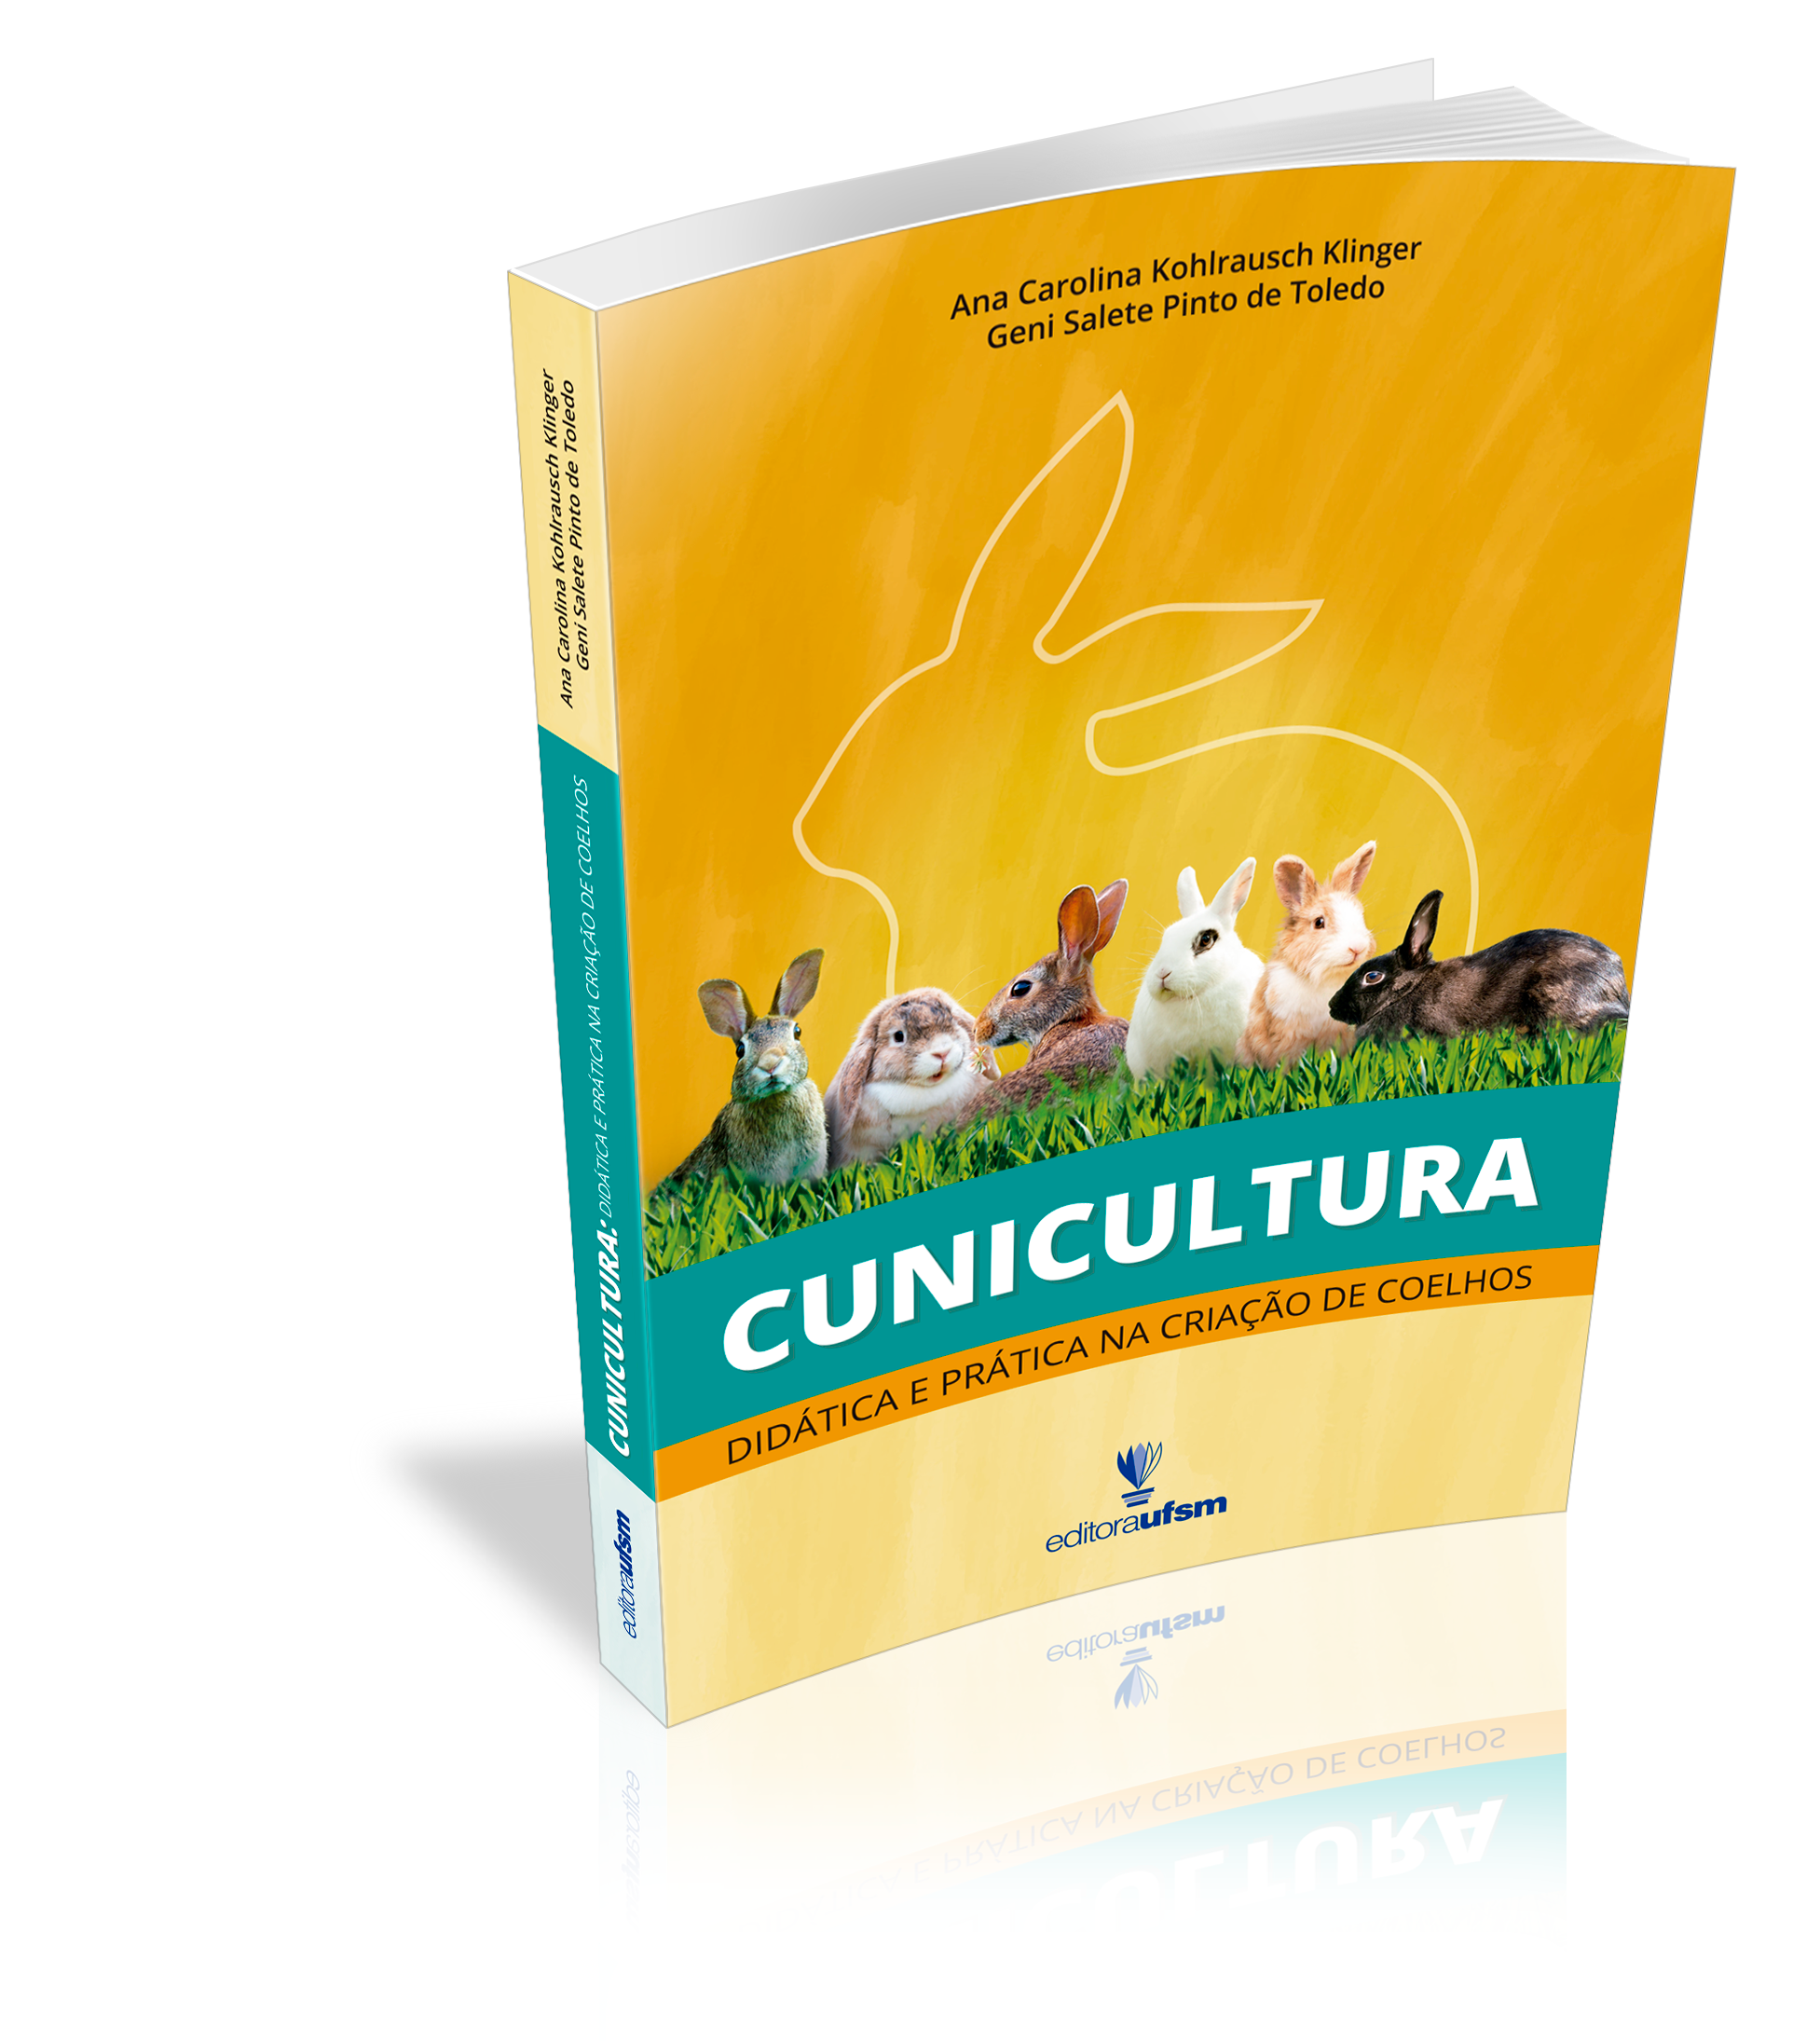 Capa do livro Cunicultura: Didática e prática na criação de coelhos